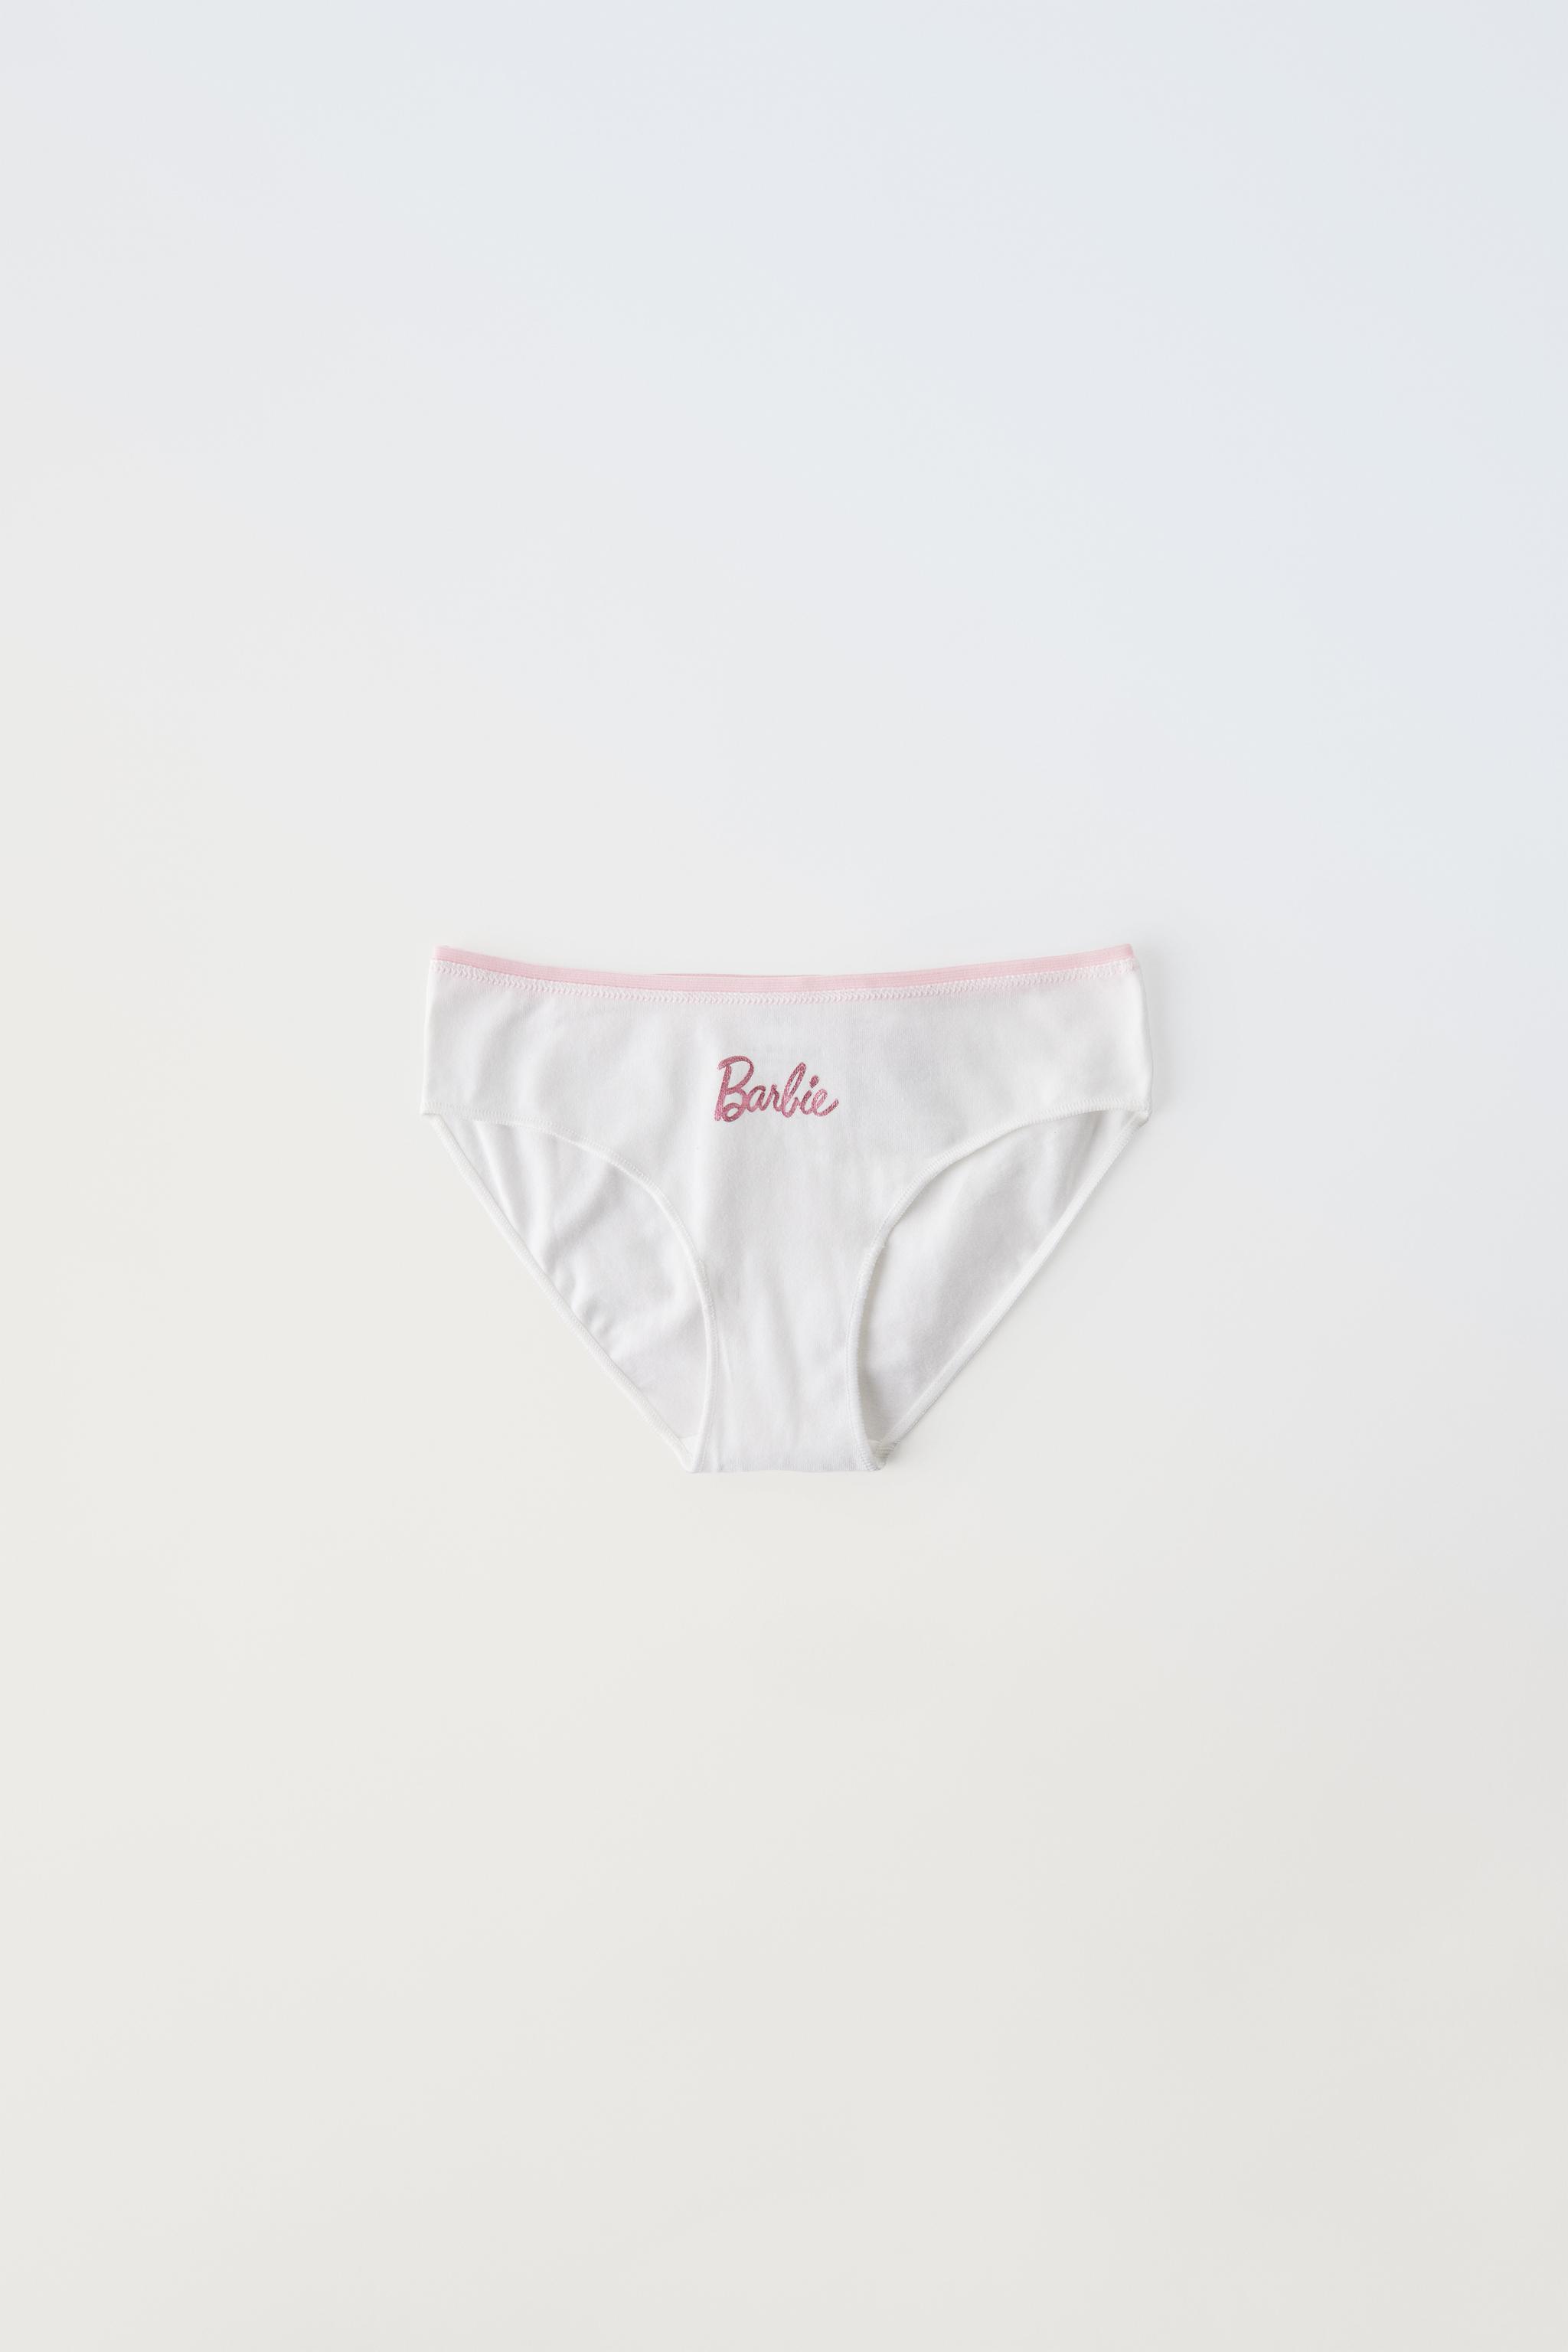 BNIP undies BARBIE DOLLS Briefs girls knickers panties underwear 100%  cotton 